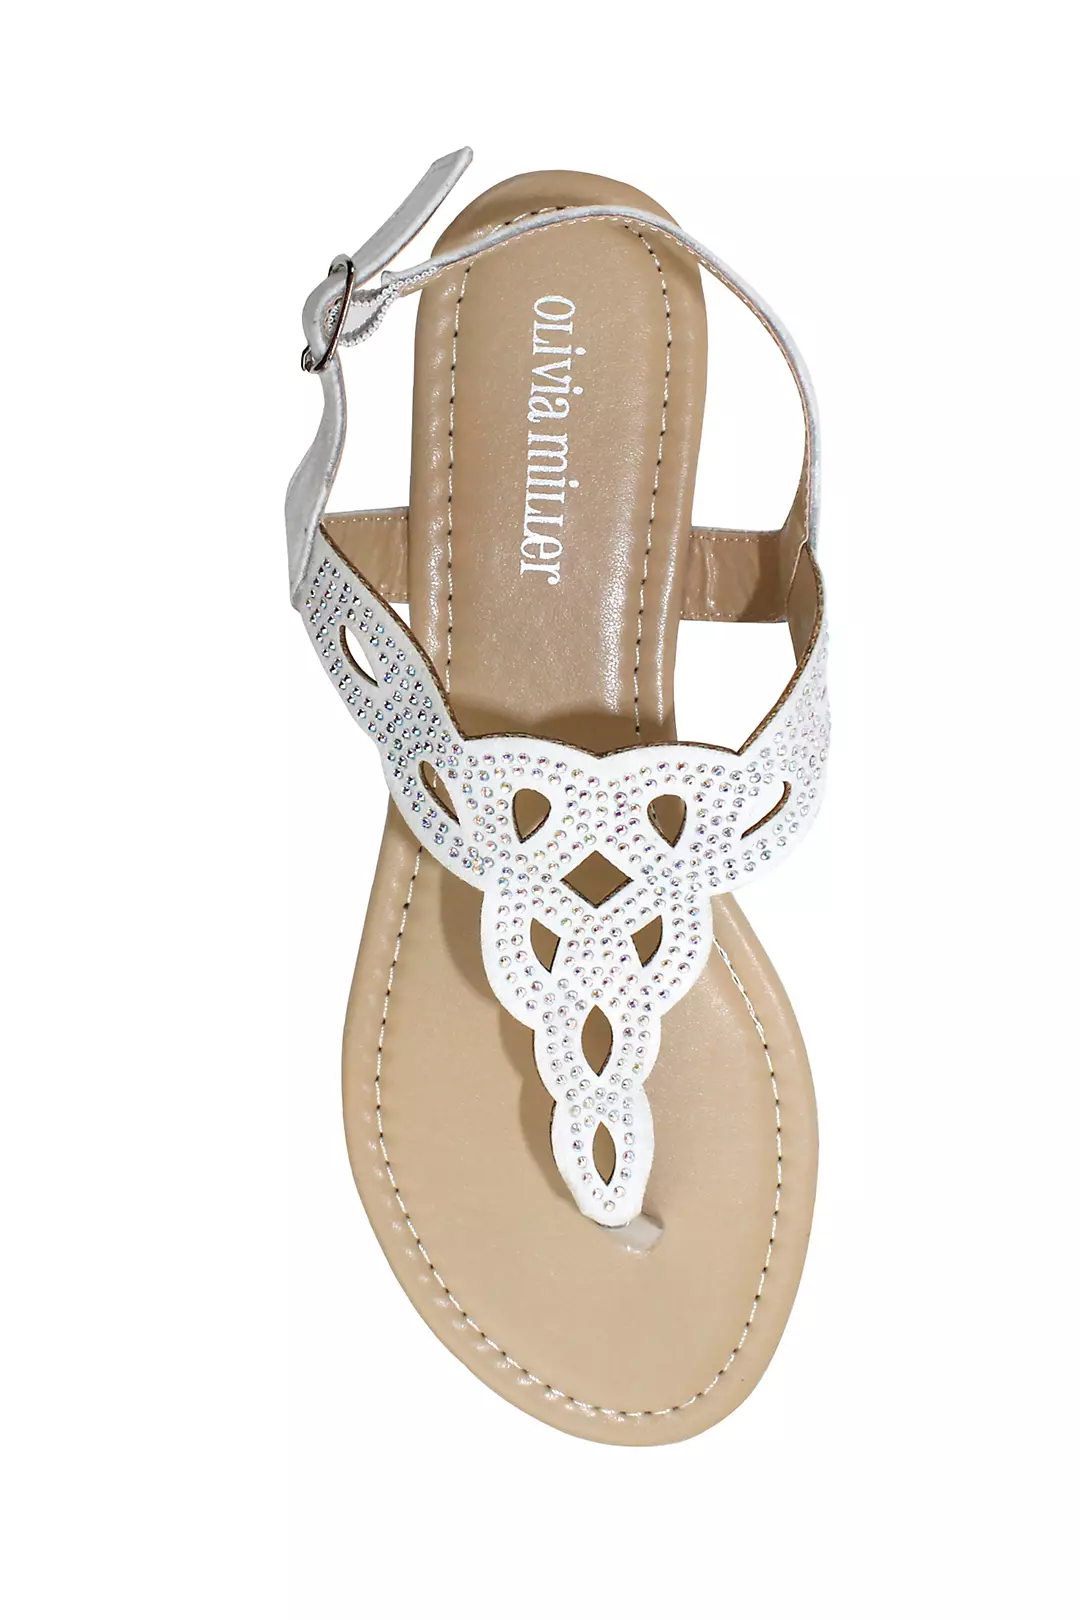 Crystal Embellished Knot Patterned Sandals Image